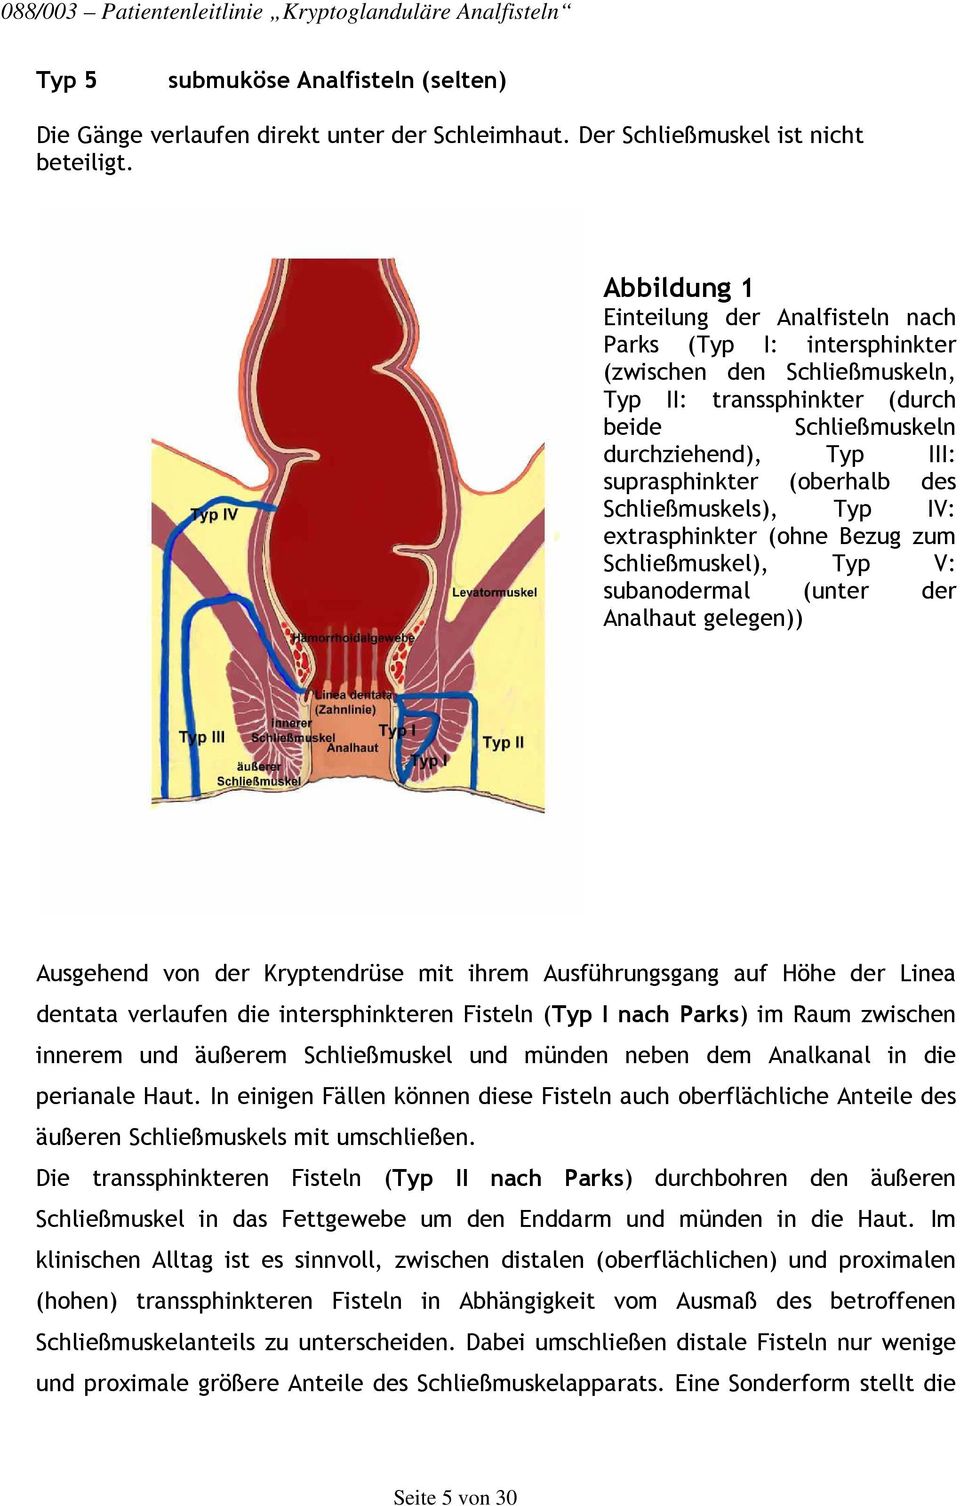 (oberhalb des Schließmuskels), Typ IV: extrasphinkter (ohne Bezug zum Schließmuskel), Typ V: subanodermal (unter der Analhaut gelegen)) Ausgehend von der Kryptendrüse mit ihrem Ausführungsgang auf